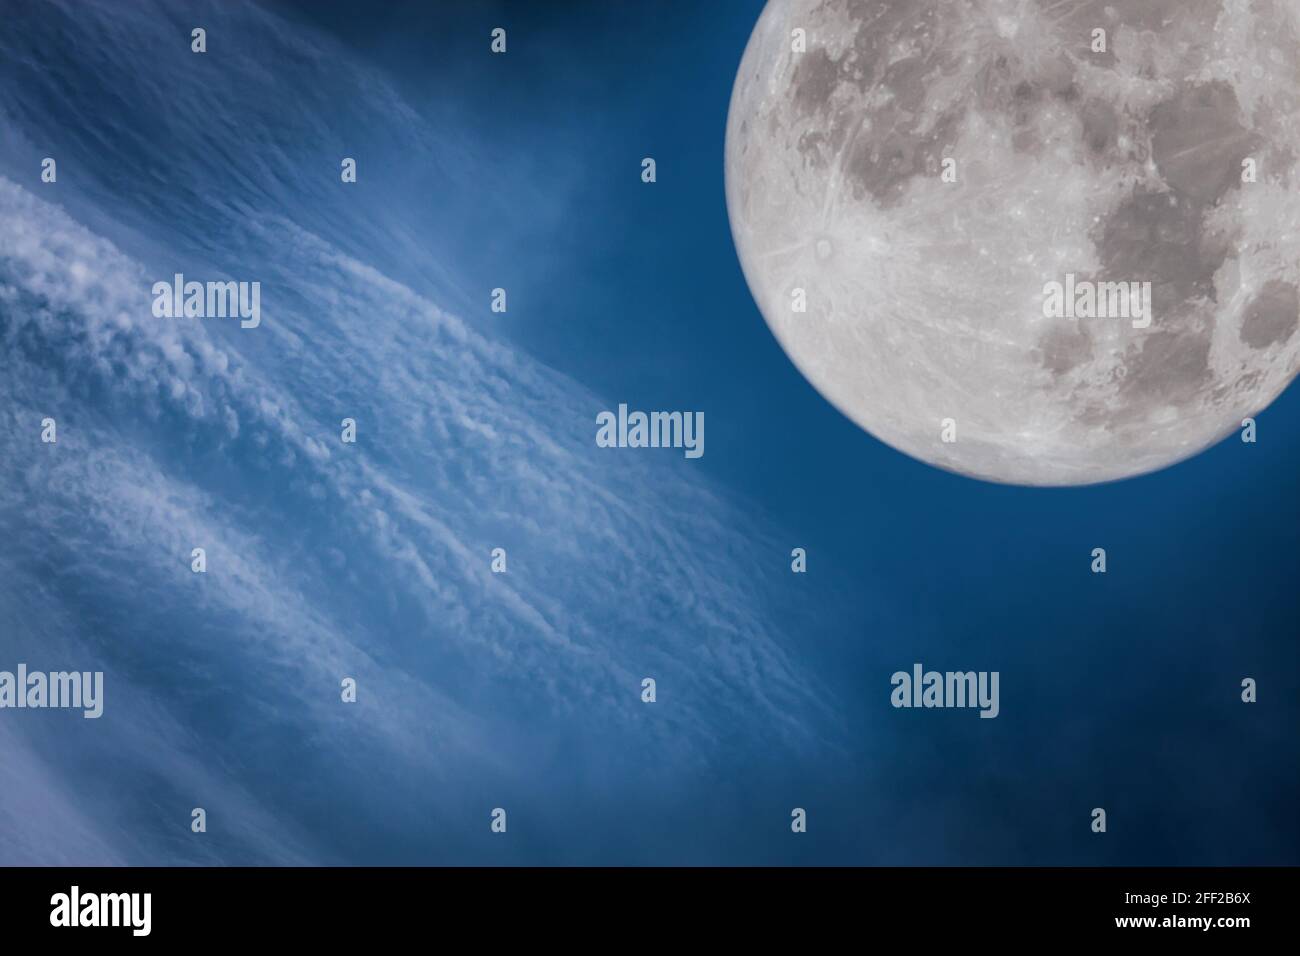 Fotos außerhalb der Welt. Mit Blick auf die wunderschöne Atmosphäre und den Mond. Schöne Natur als Hintergrund verwenden. Stockfoto